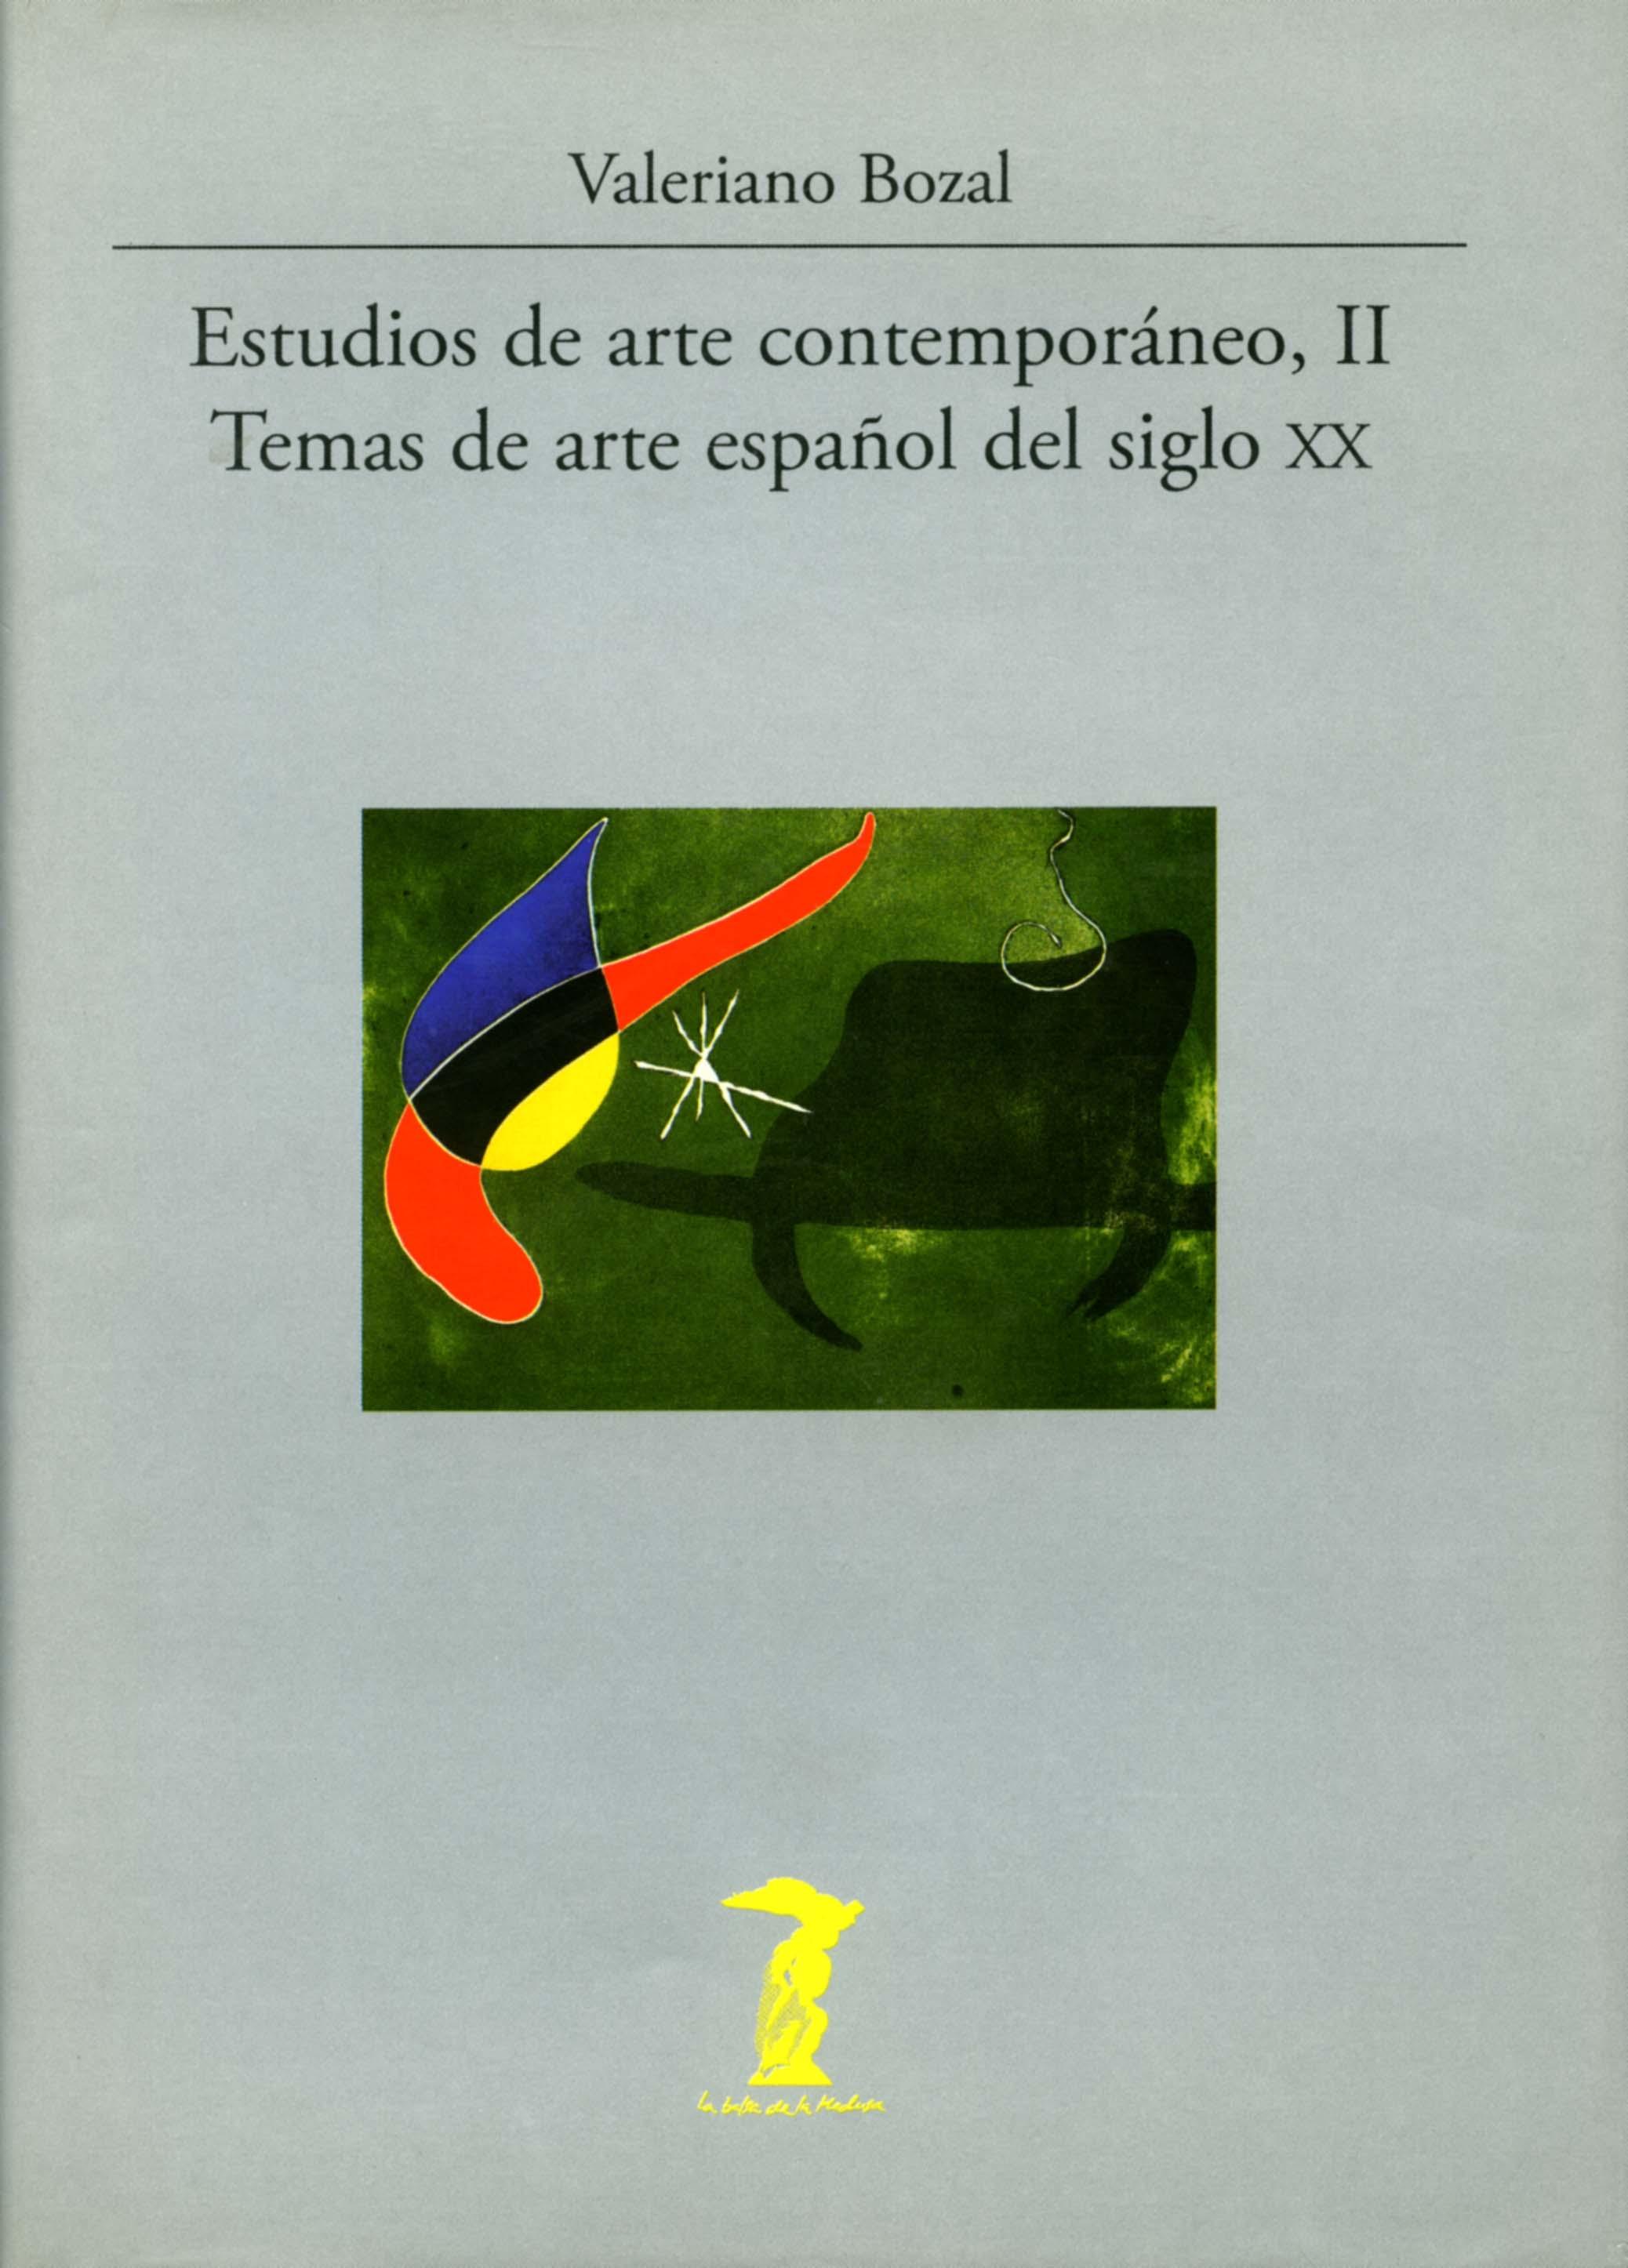 Estudios de arte contemporáneo - II: Temas de arte español del siglo XX